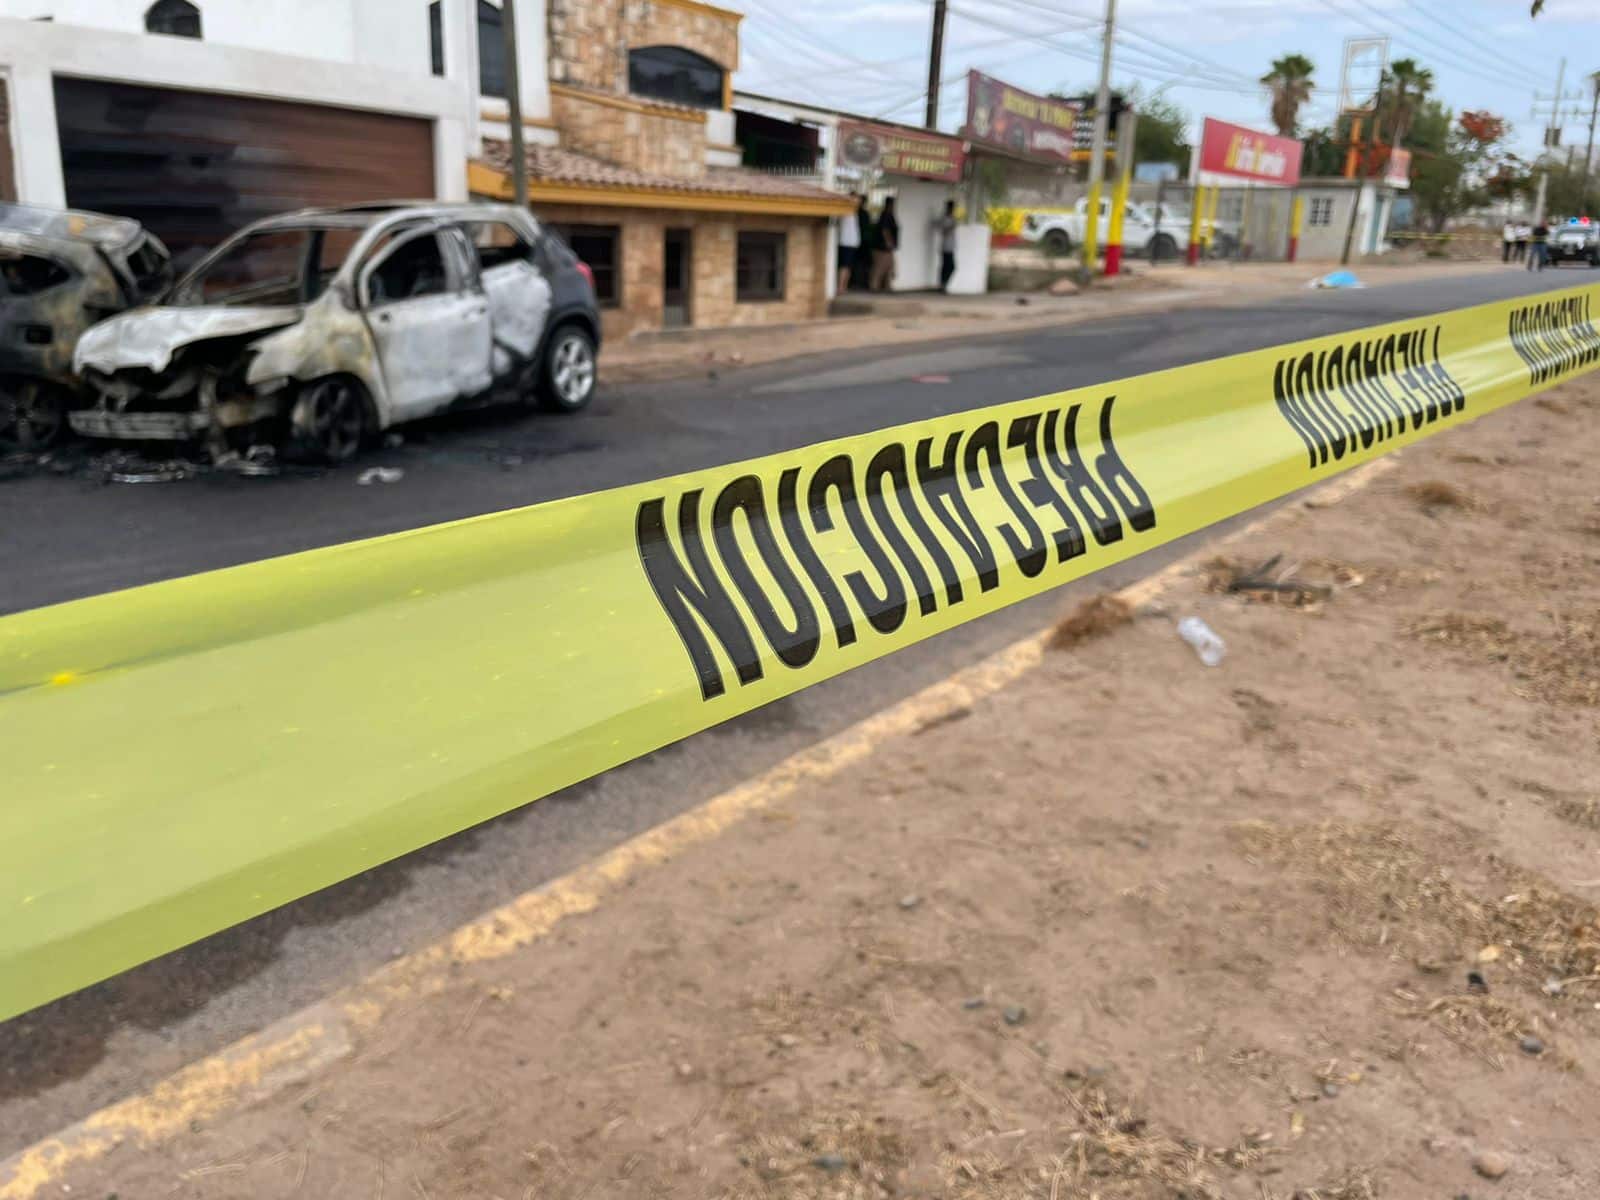 الخط الأصفر للشرطة لتحديد الحوادث حيث تم حرق مركبتين بعد حادث على طريق كولياكانسيتو السريع في كولياكان.